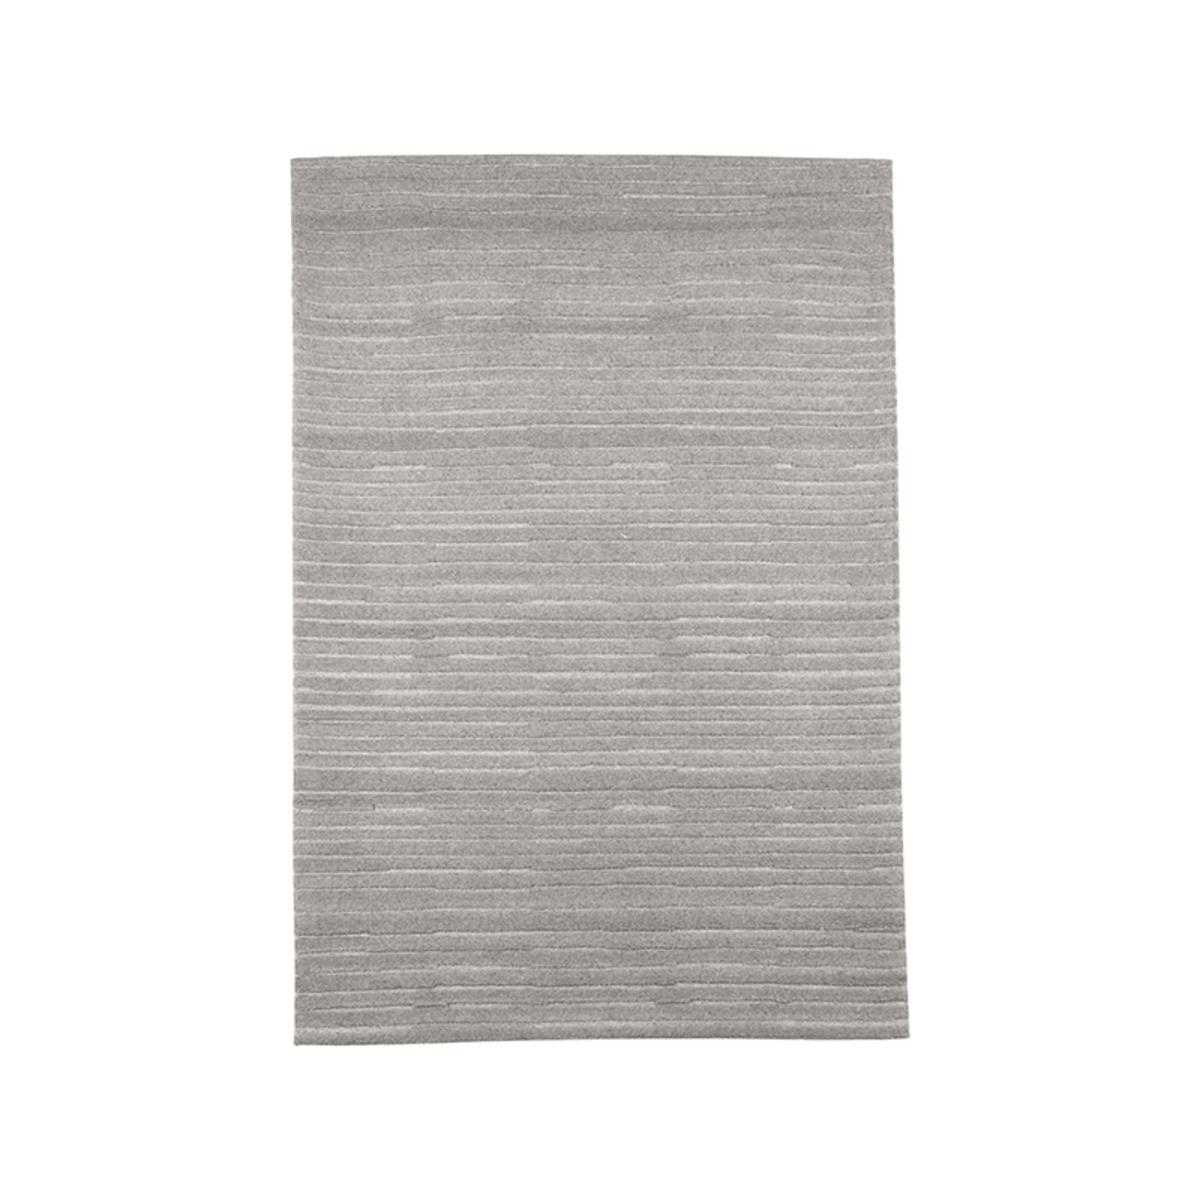  Vloerkleden Luxy - Grijs - Synthetisch - 160x230 cm afbeelding 1